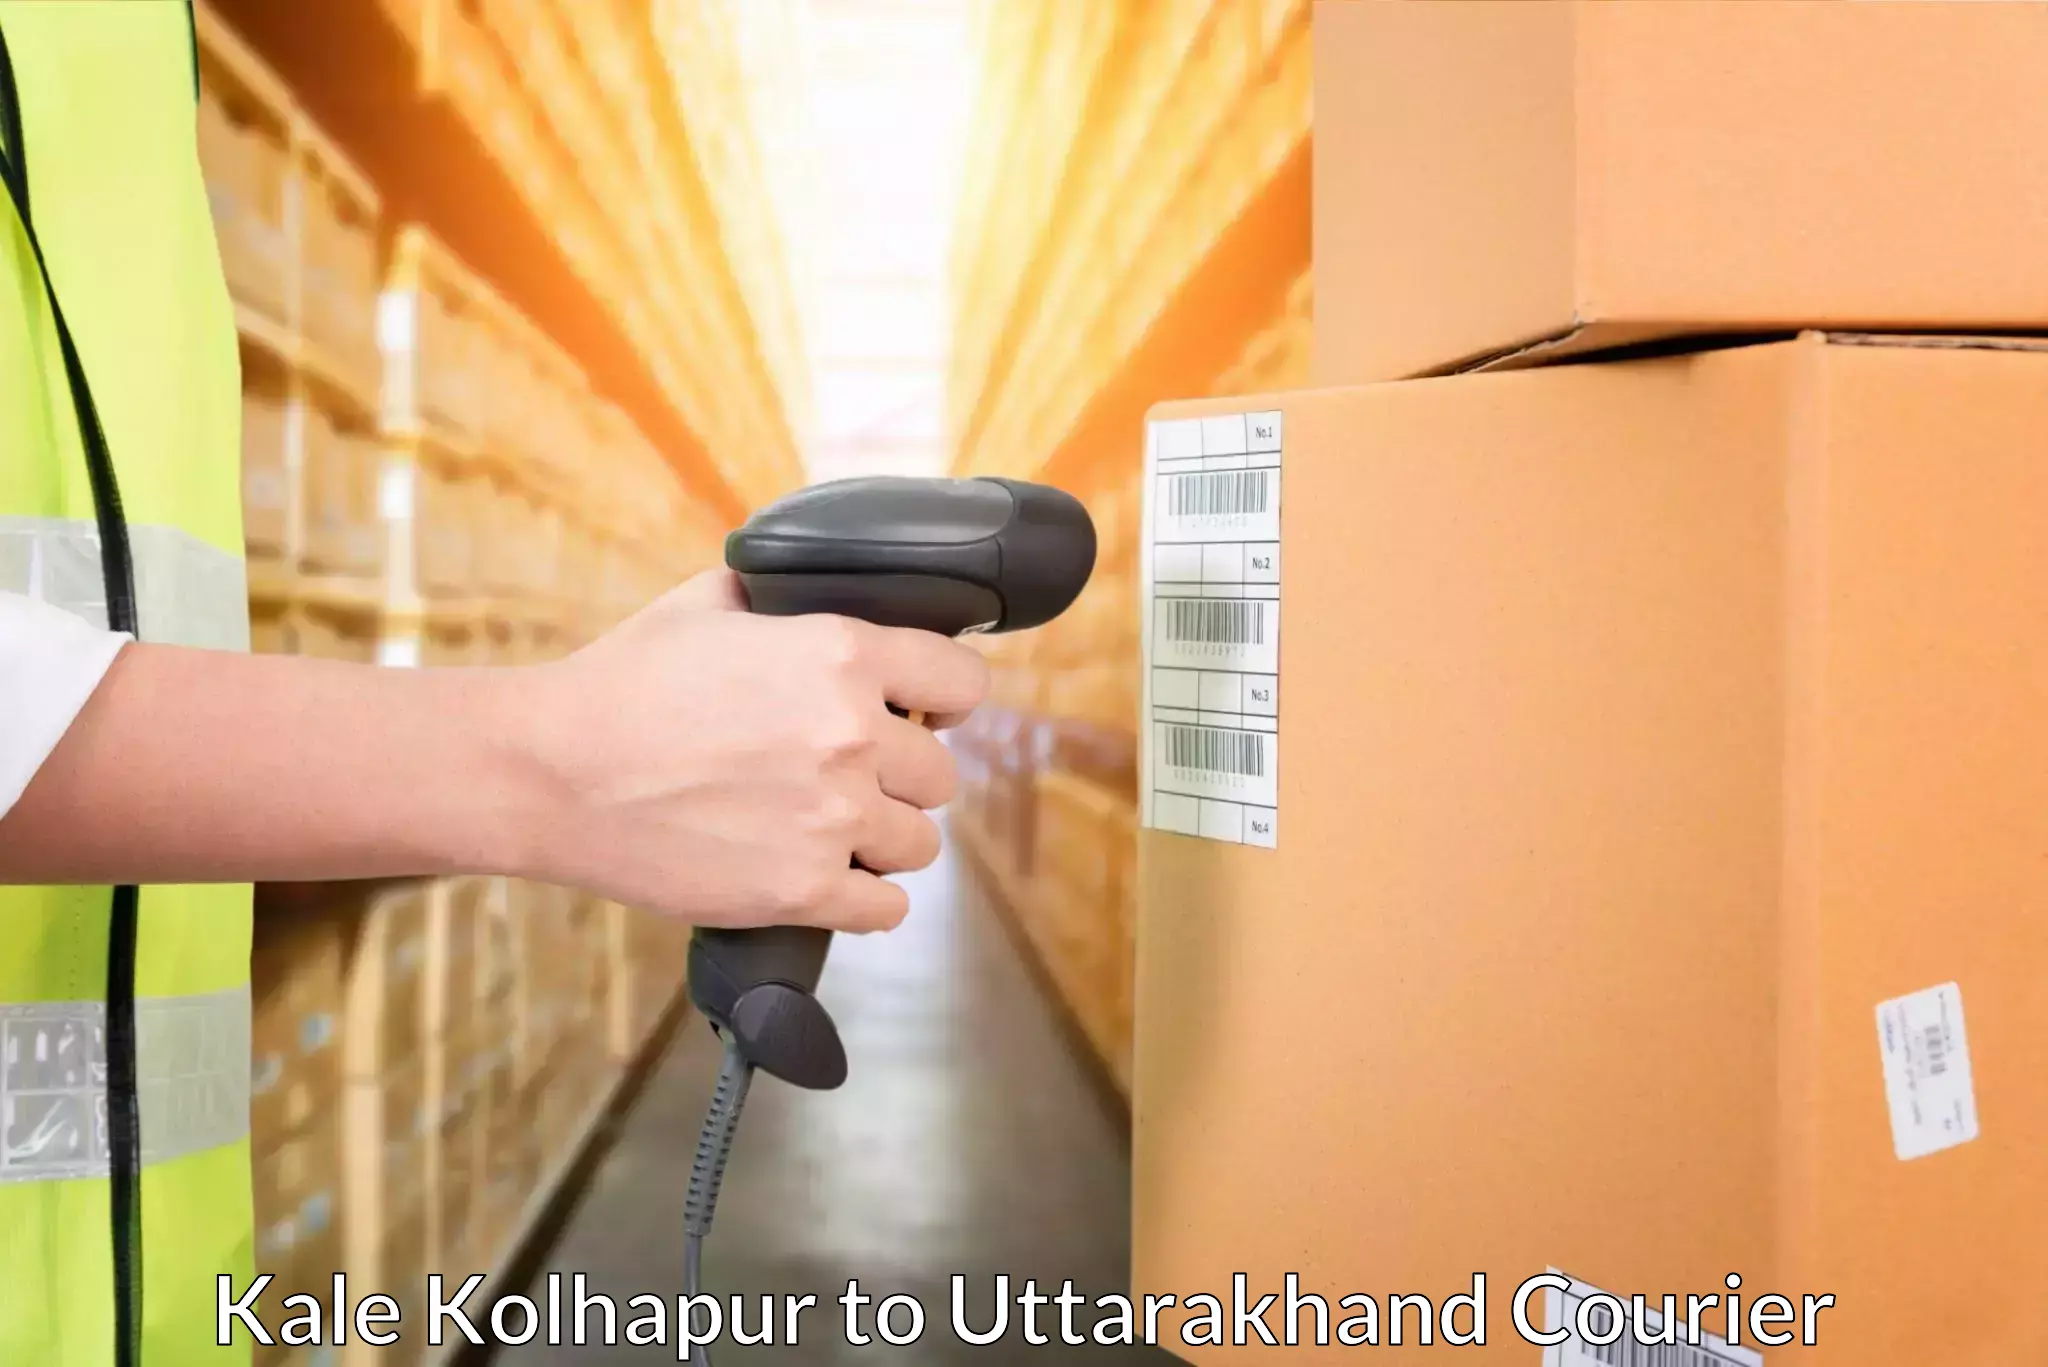 Express logistics service Kale Kolhapur to Pauri Garhwal